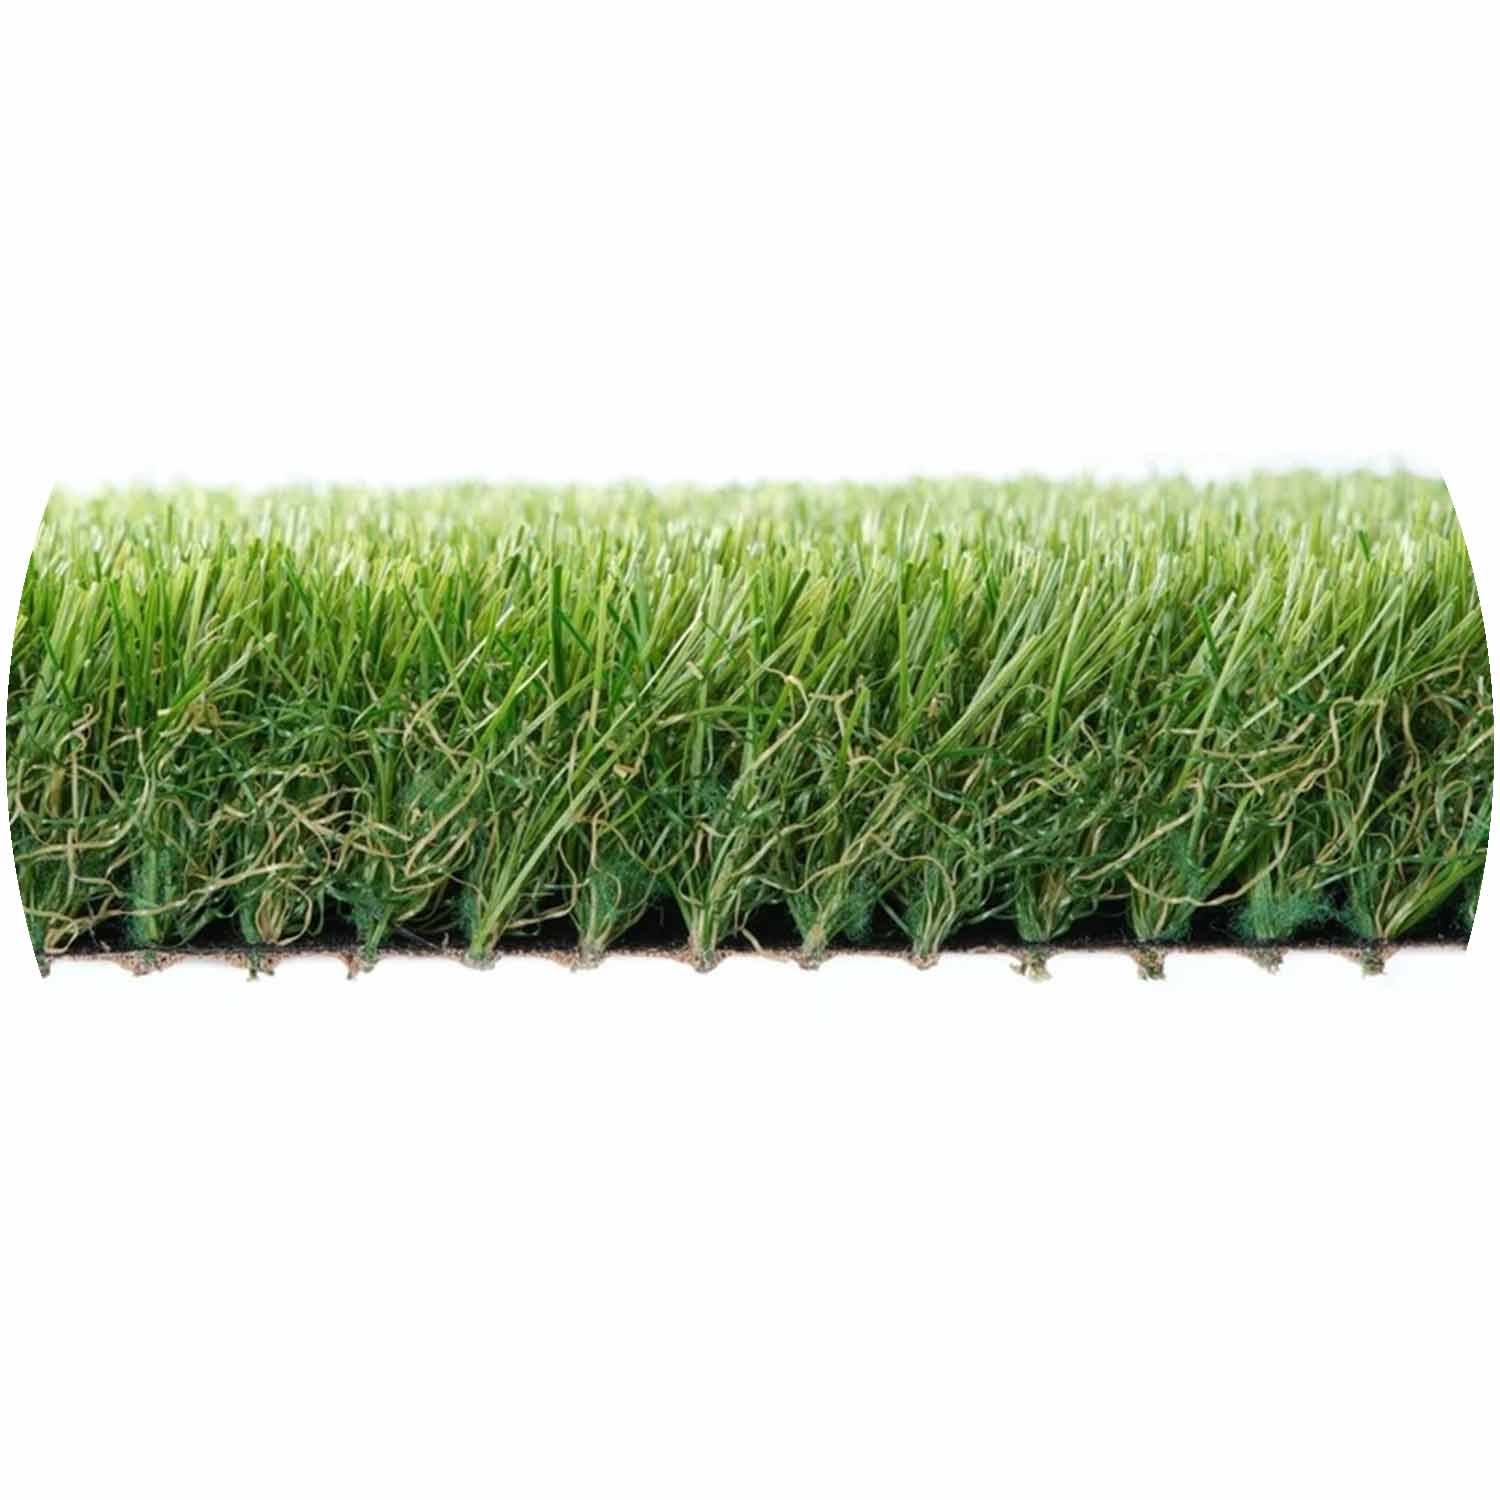 Blitz 37mm Pile Artificial Grass per mtr